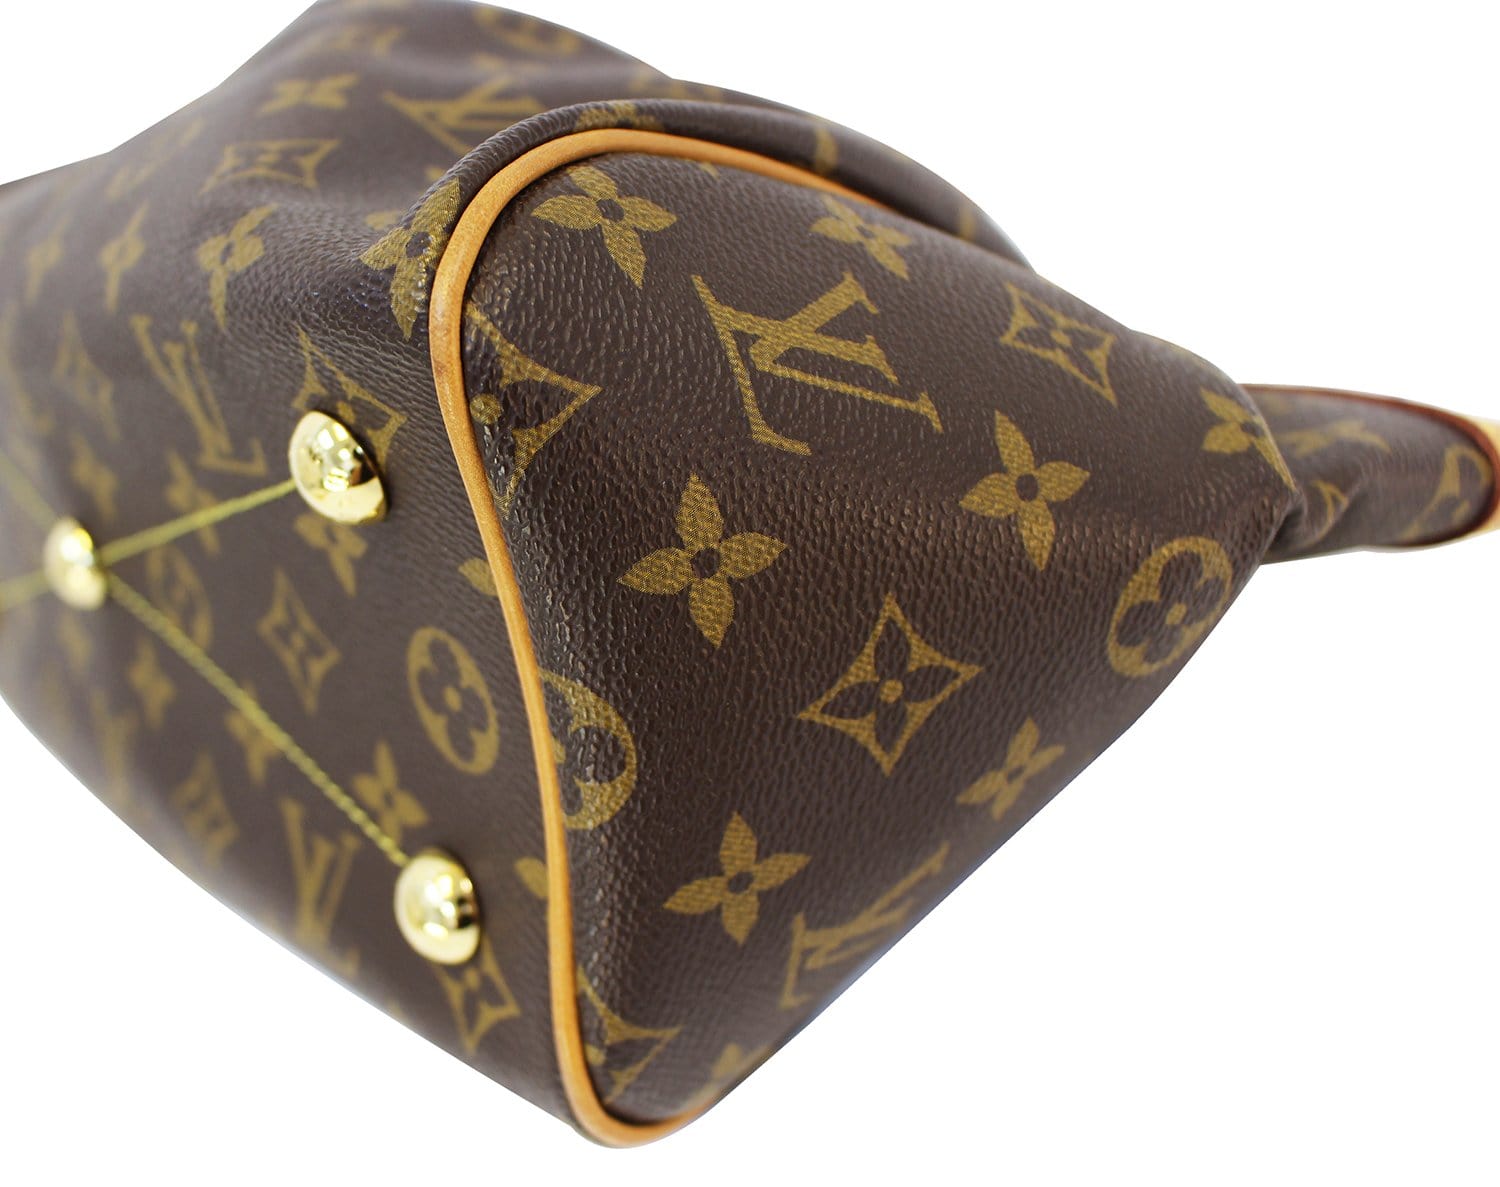 Authentic Louis Vuitton Classic Monogram Canvas Tivoli PM Handbag – Paris  Station Shop